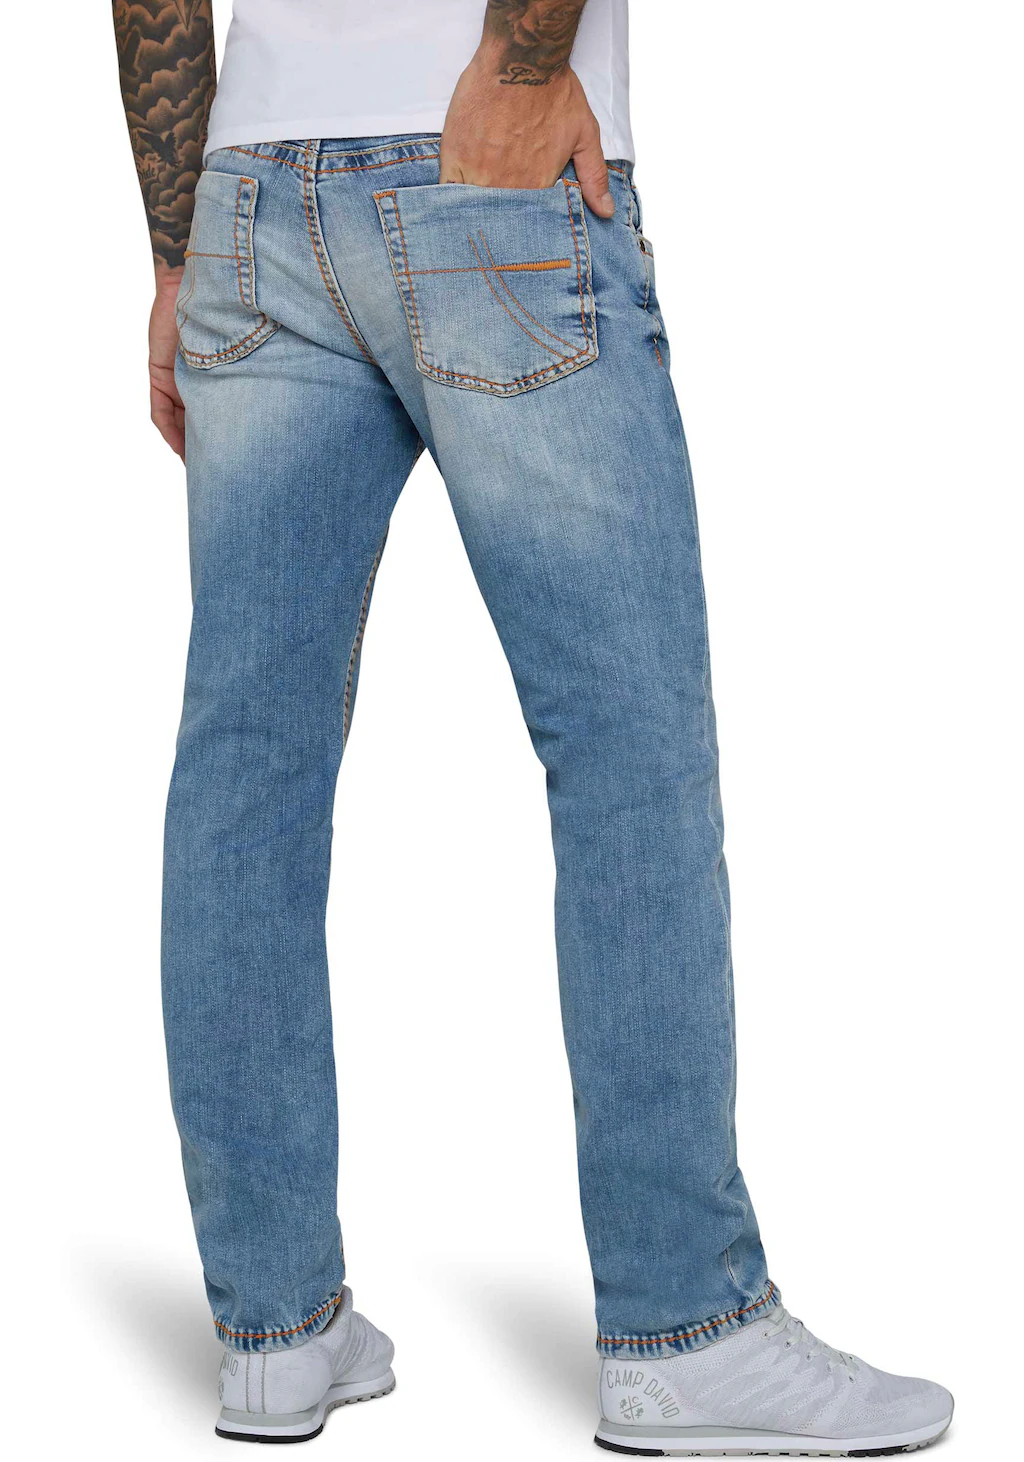 CAMP DAVID Straight-Jeans NI:CO:R611 mit markanten Steppnähten günstig online kaufen